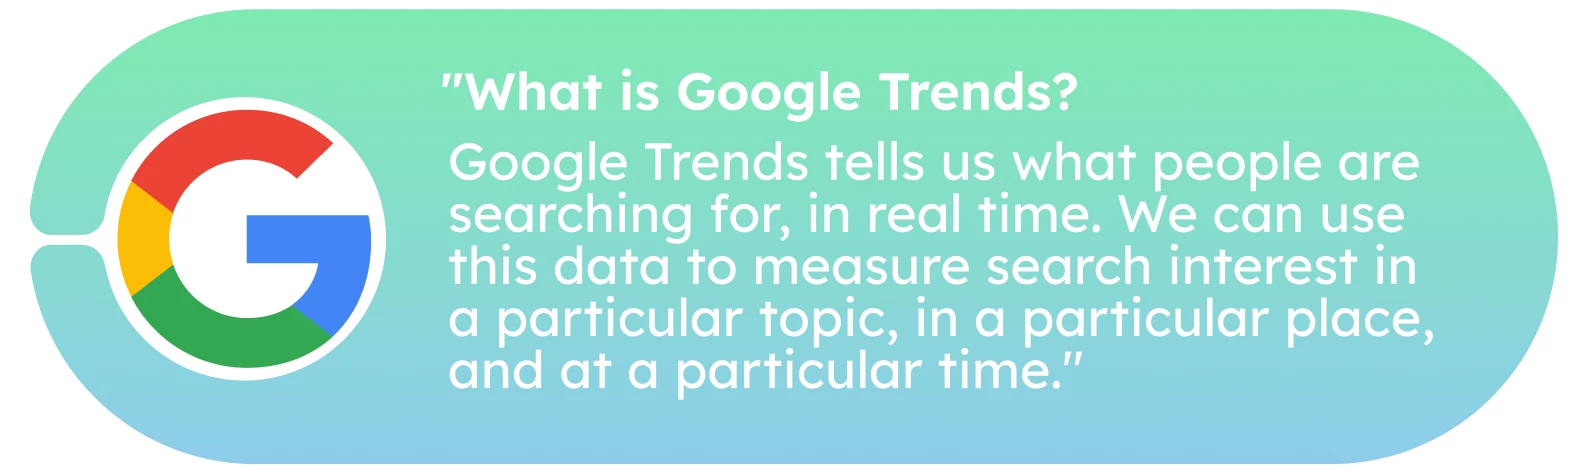 Как и зачем использовать Google Trends